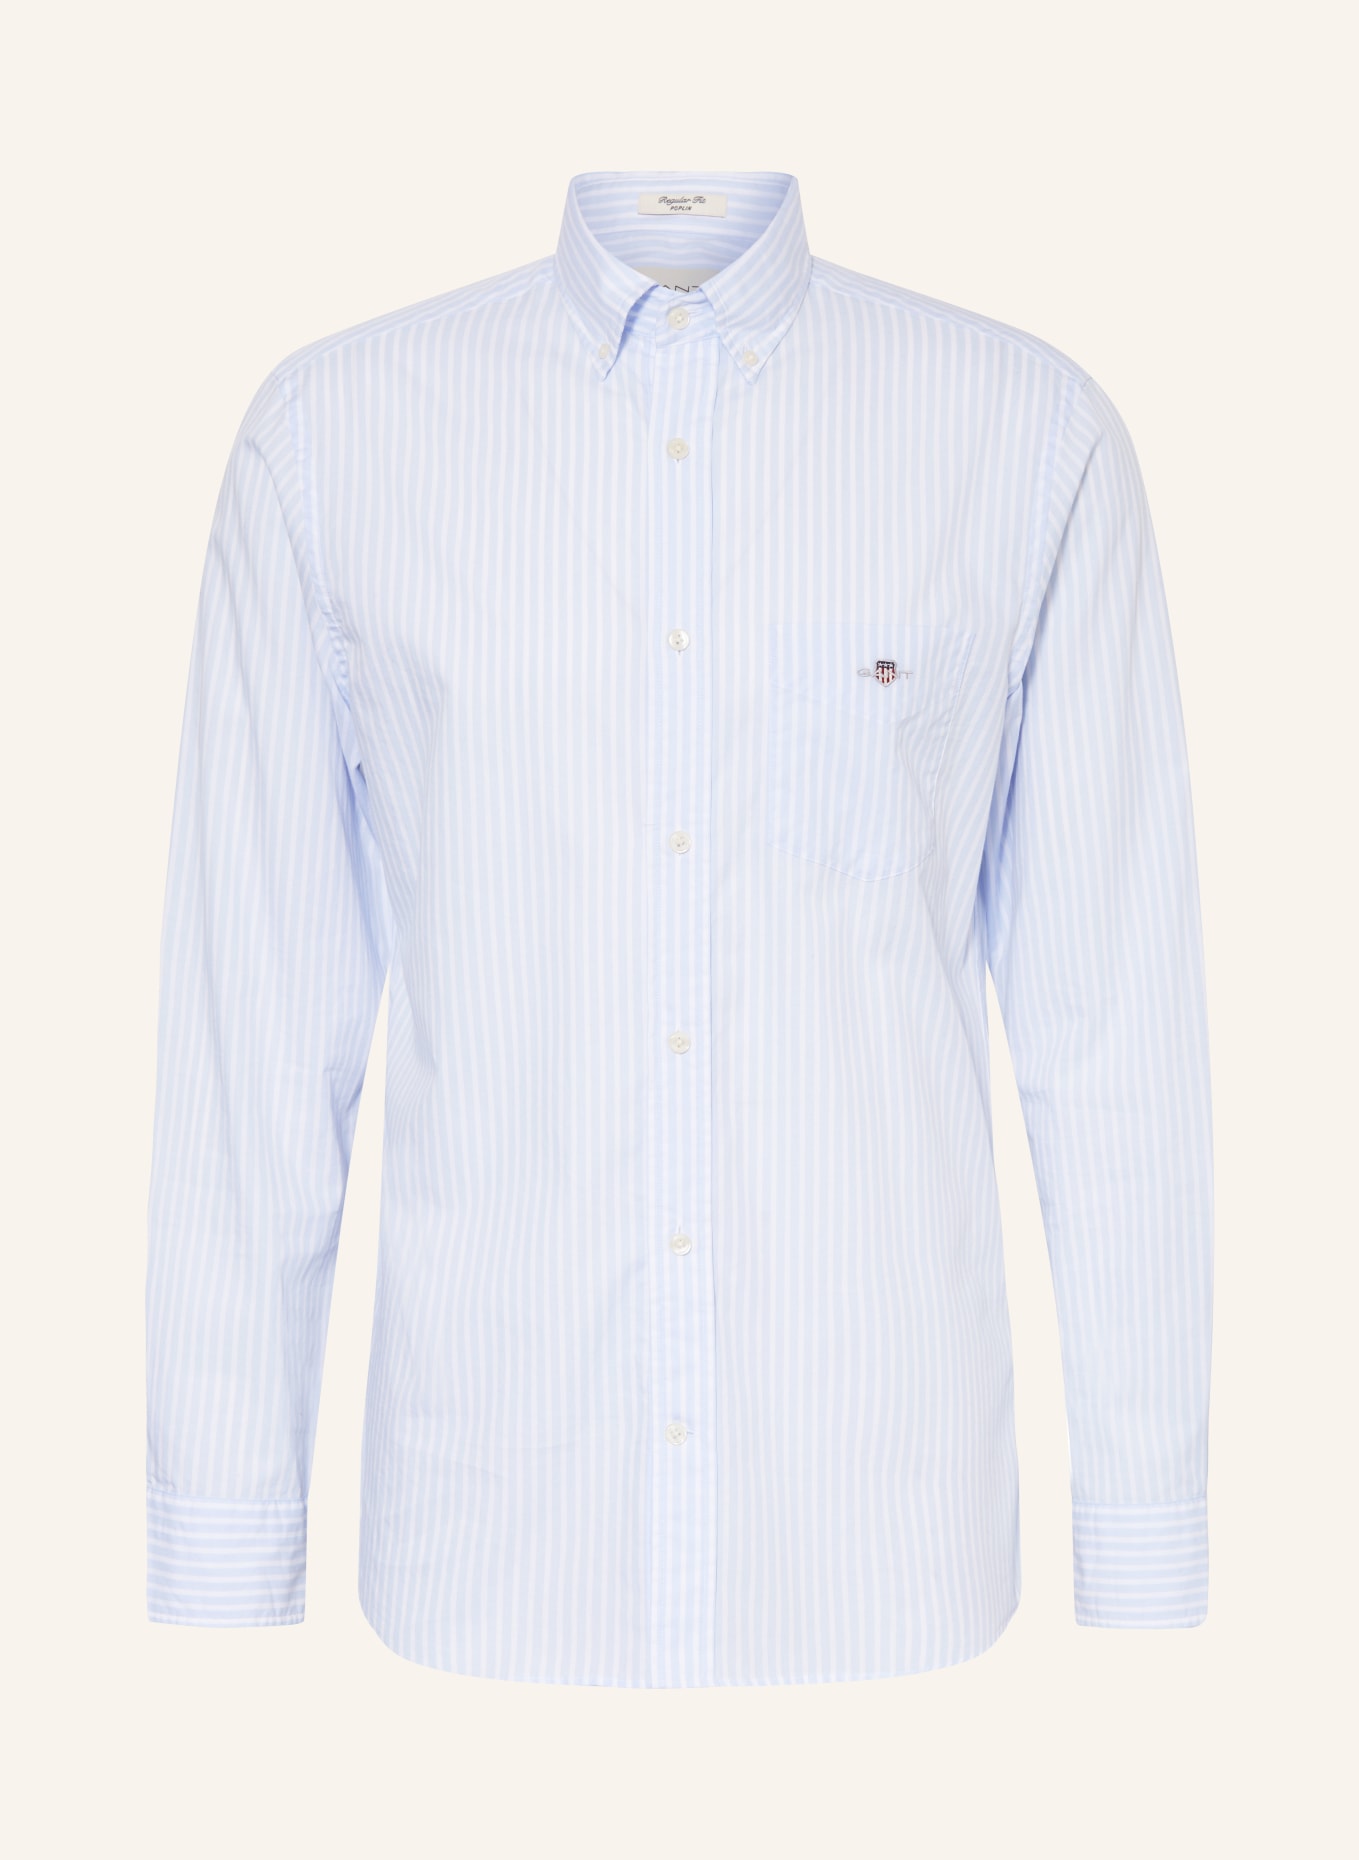 GANT Shirt regular fit, Color: LIGHT BLUE (Image 1)